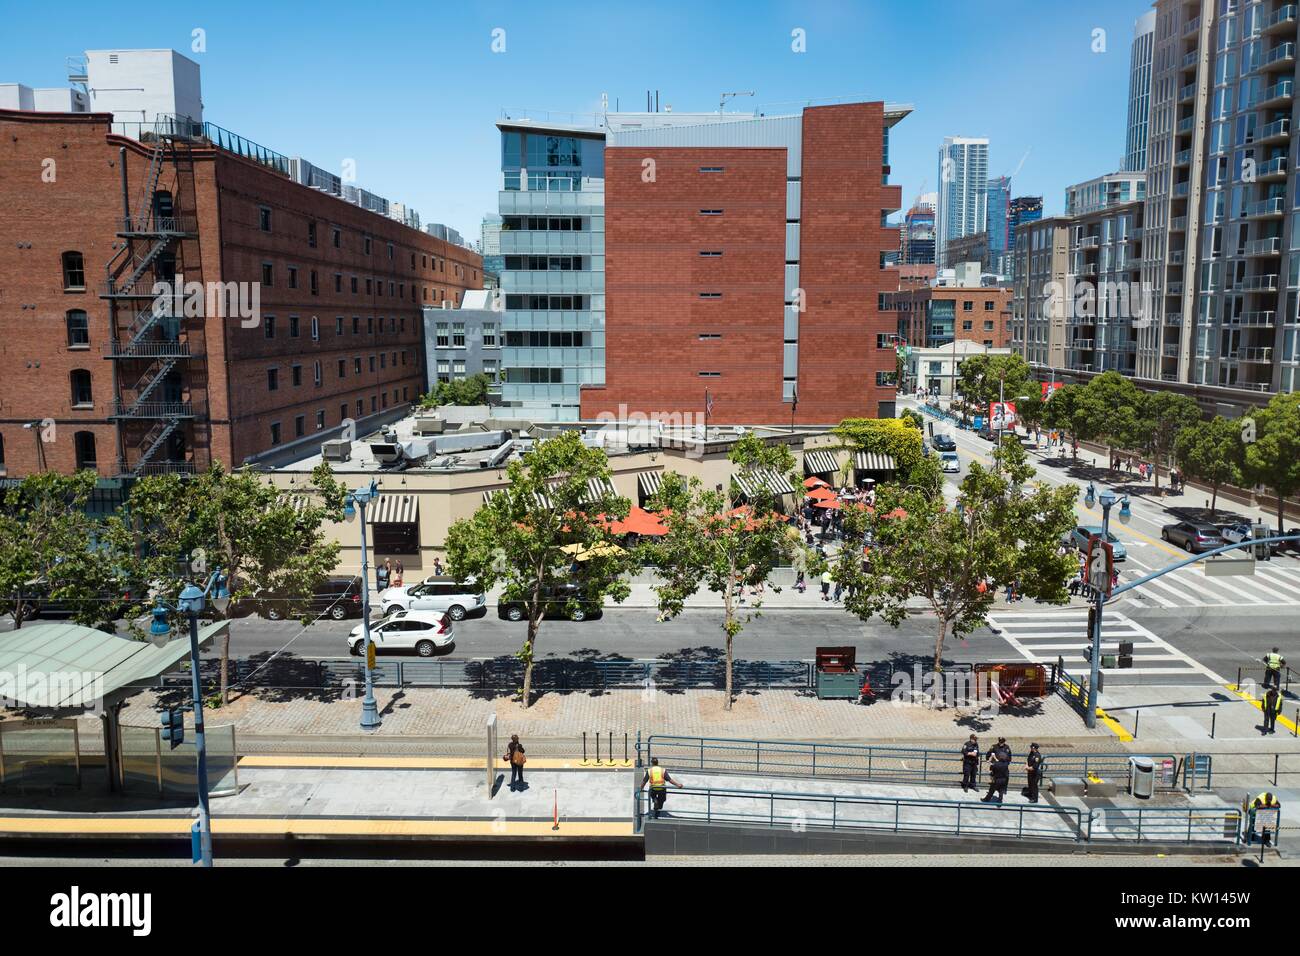 Vue aérienne de la 2e Rue et King Street station pour le San Francisco Municipal Railroad (MUNI) et des bâtiments dans le quartier du bassin de la Chine de San Francisco, Californie, 2016. Banque D'Images